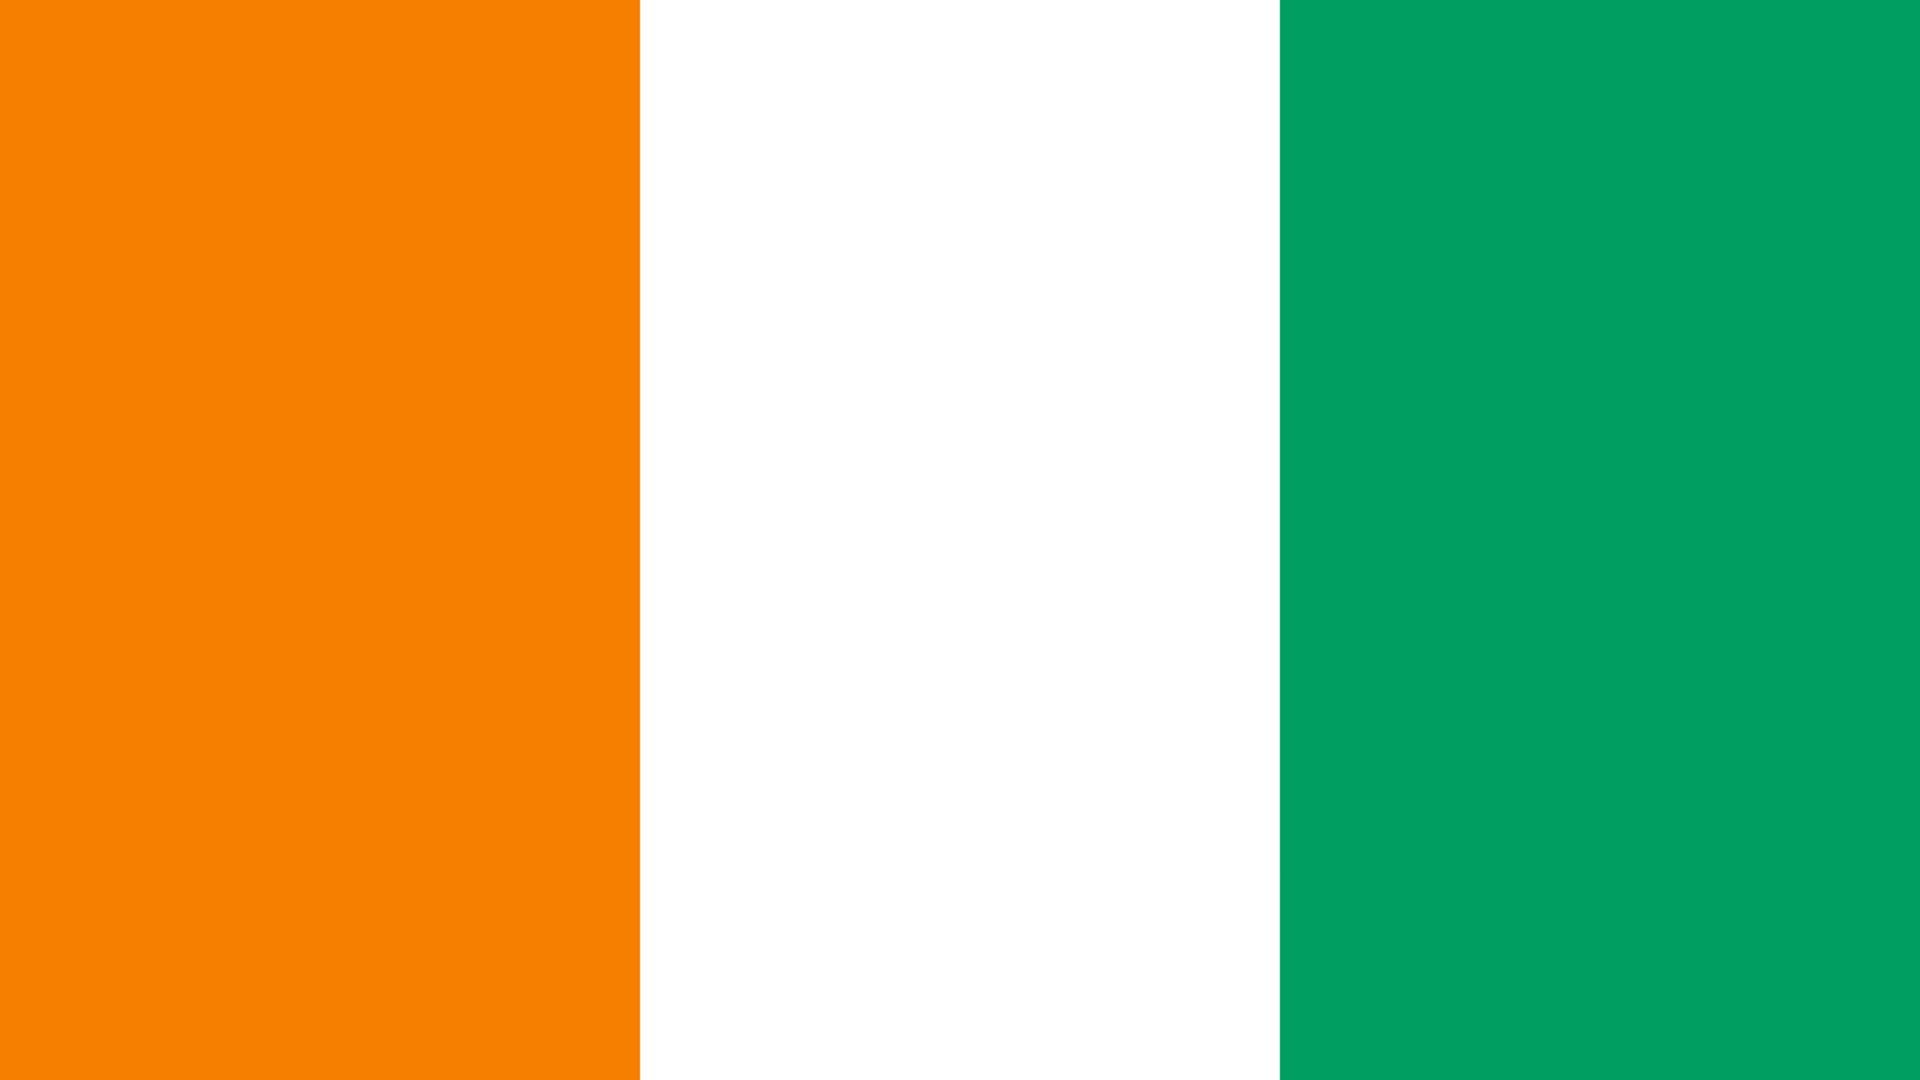 A bandeira é composta por três listas verticais iguais, nas cores: laranja, branco e verde. Assemelha-se à bandeira da Irlanda e da Itália.